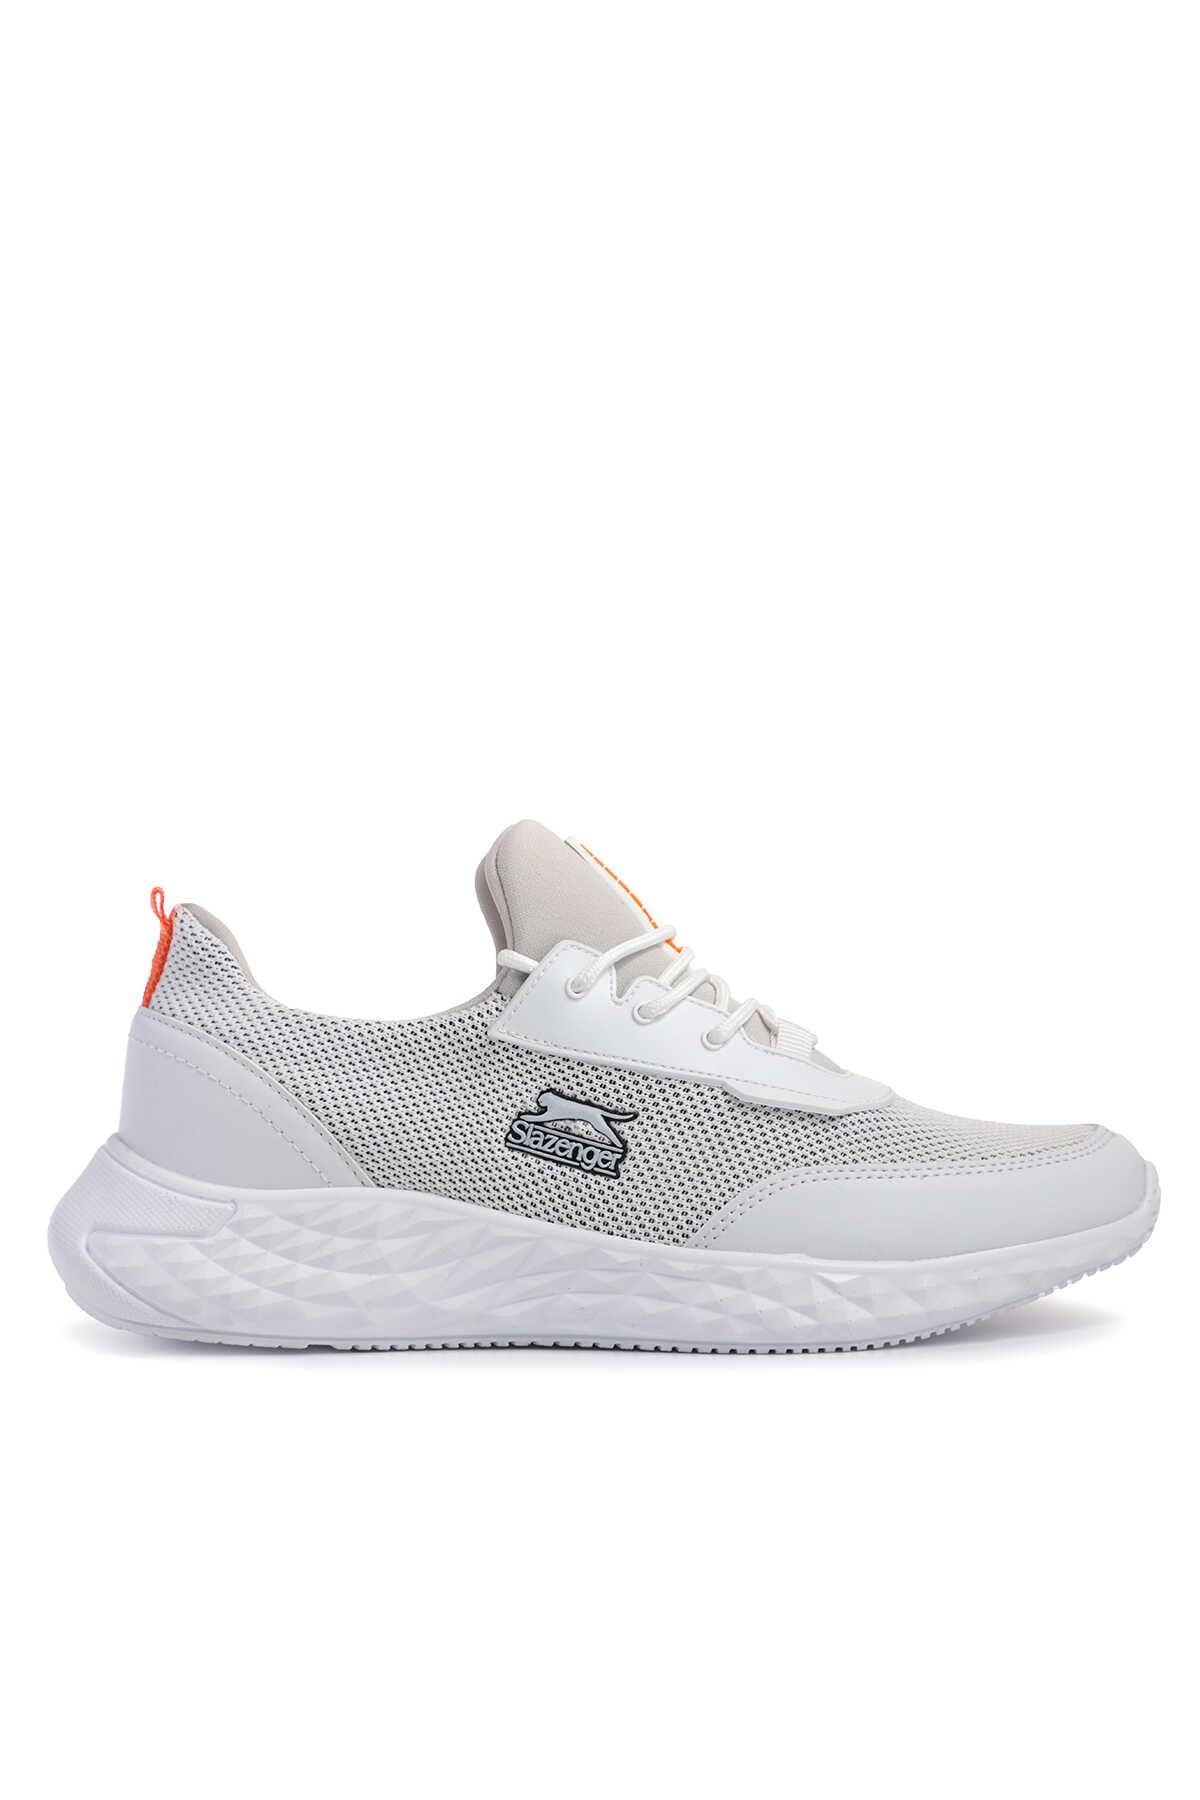 Slazenger - Slazenger TEN Sneaker Erkek Ayakkabı Beyaz